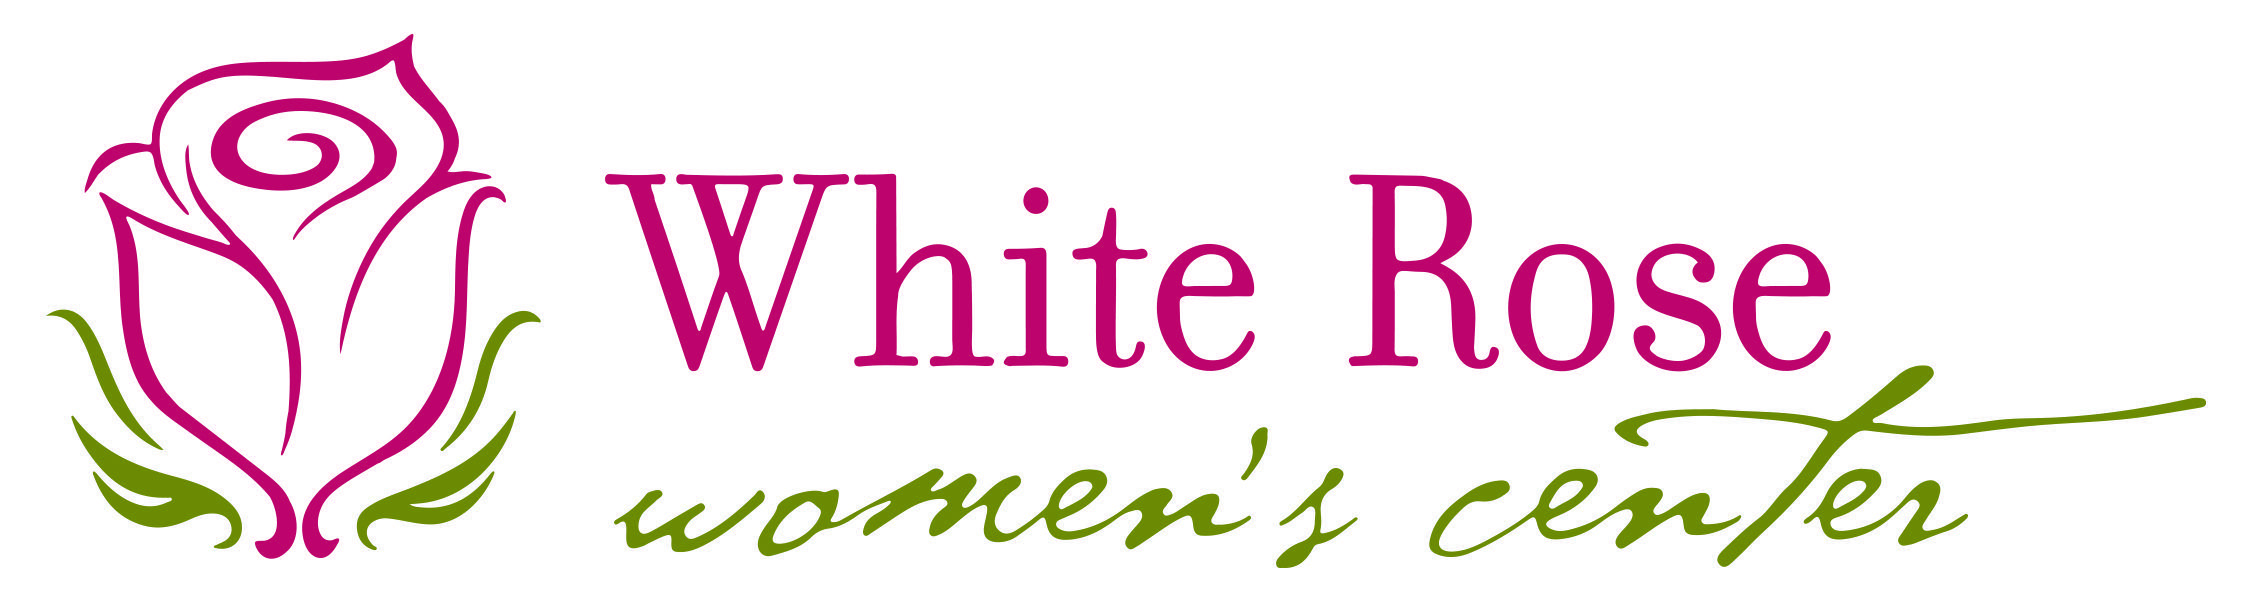 White Rose Logo - White Rose | St. Joseph's Helpers of Dallas